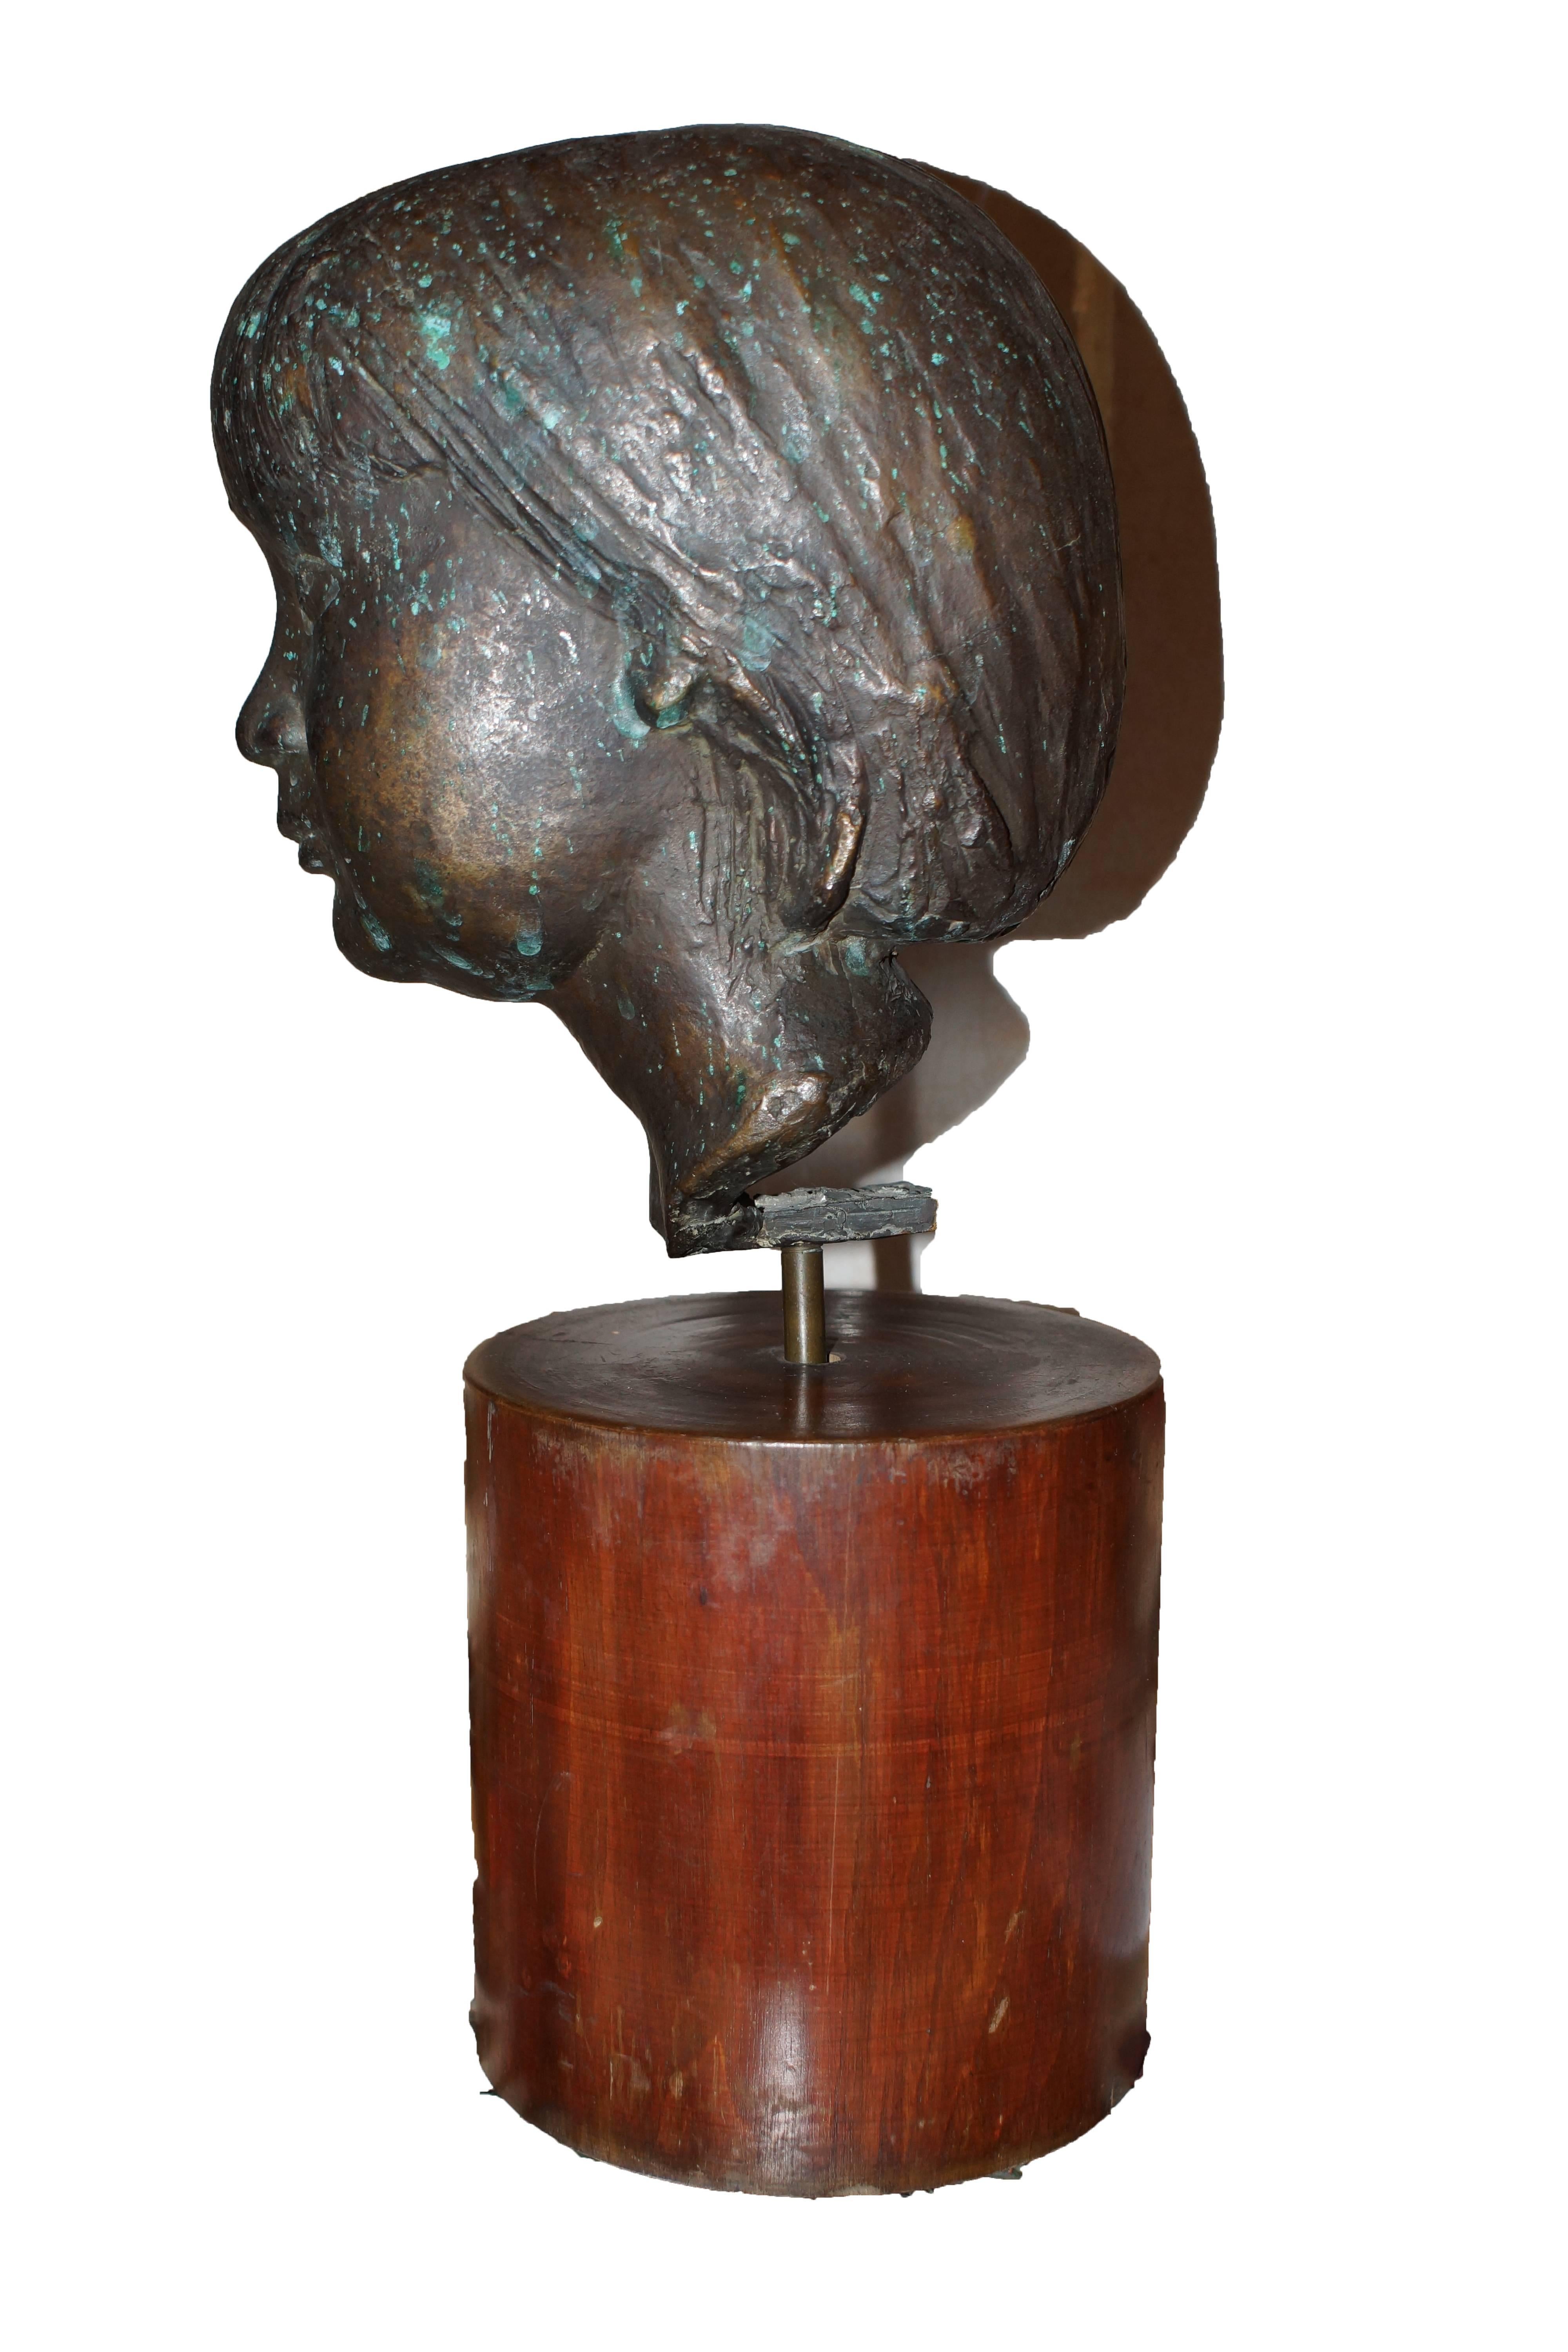 Dieser Kopf eines Jungen ist eine seltene, wertvolle und unveröffentlichte Skulptur von Marino Marini, die sich seit über 60 Jahren in einer Privatsammlung befindet.

Das gleiche Thema auf Stein ist in der Electa Edition 1972 ，